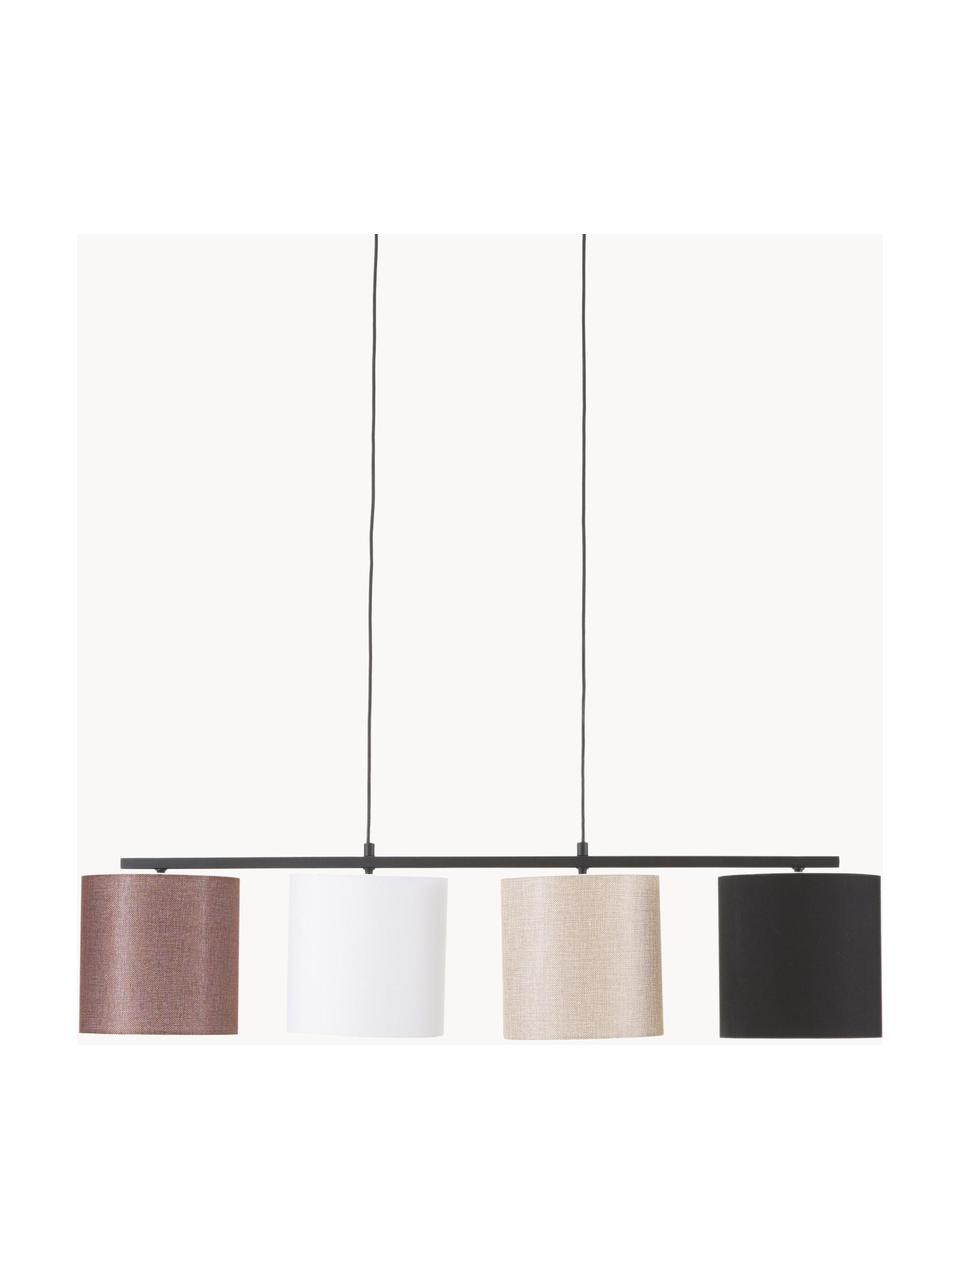 Grote hanglamp Valiz met stoffen lampenkap, Lampenkap: textiel, Zwart, beige, wit, bruin, B 110 x D 25 cm